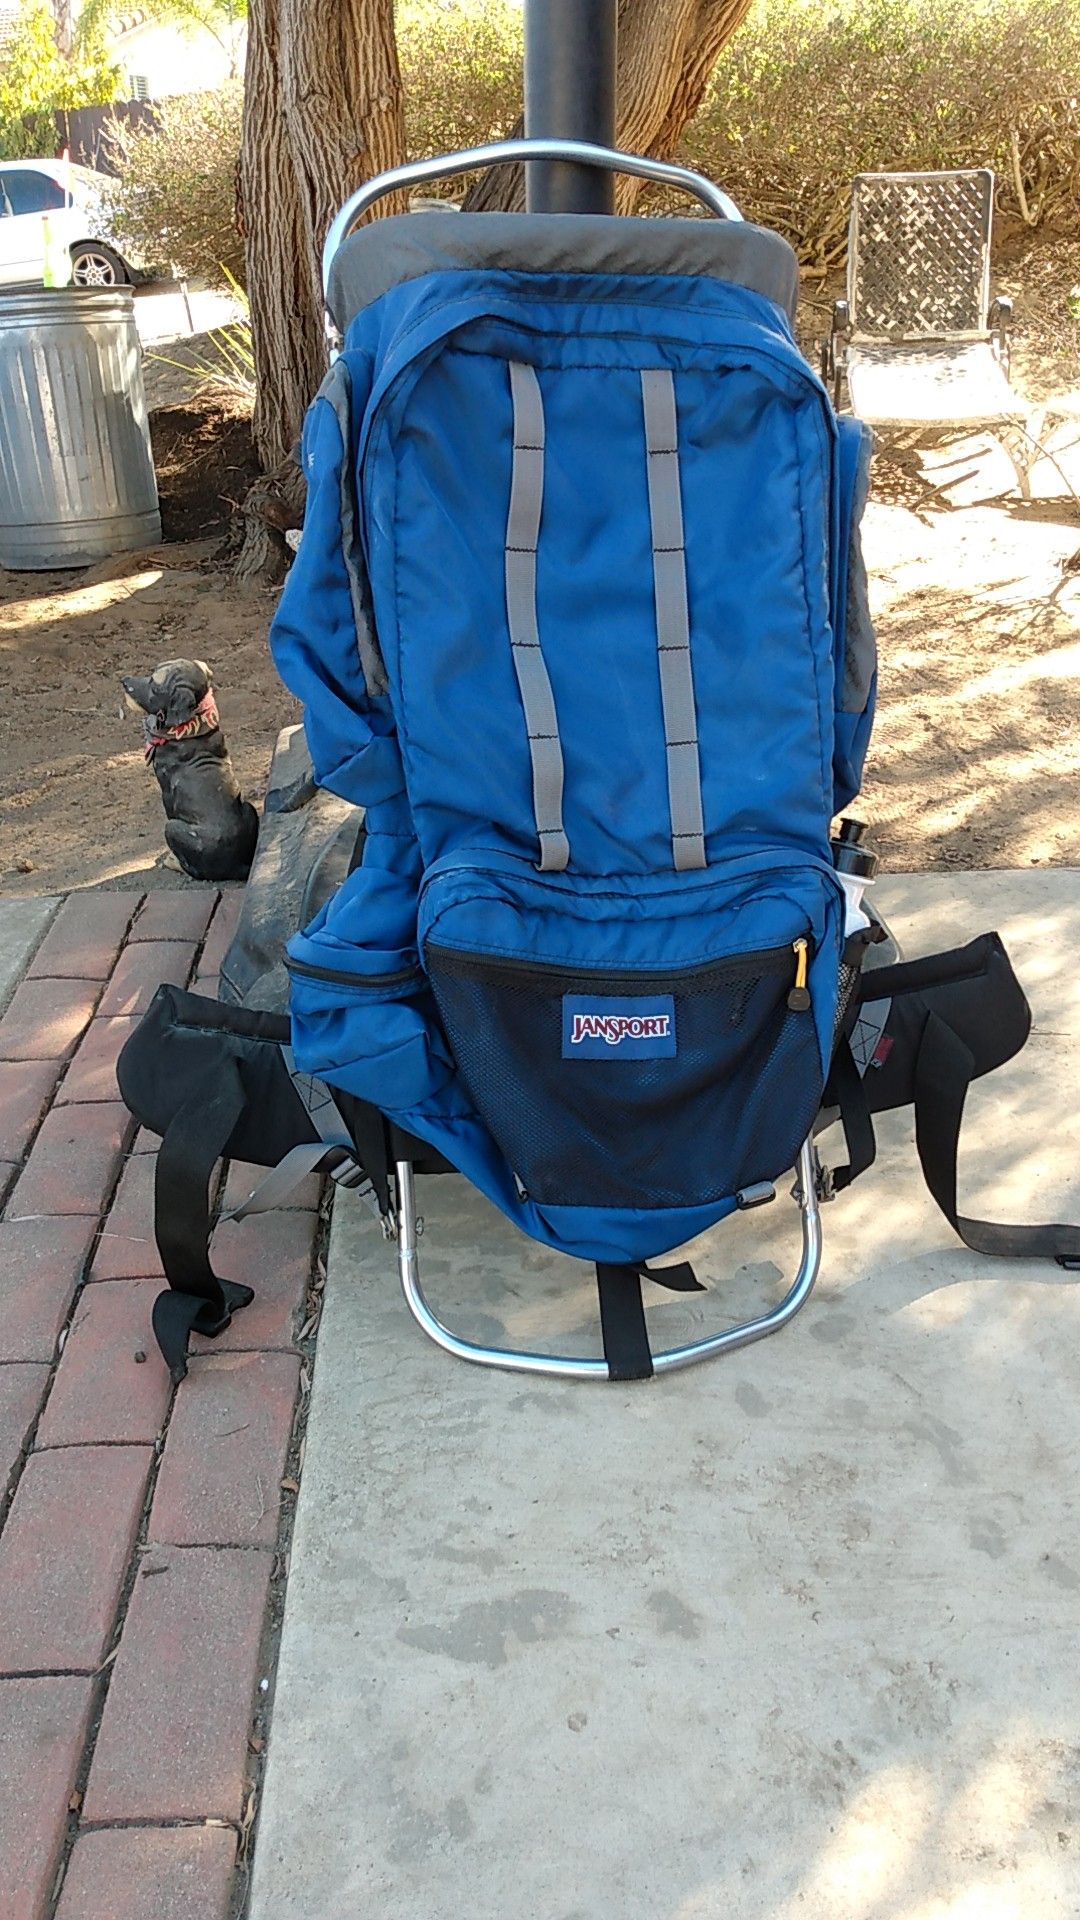 JanSport hiking backpack